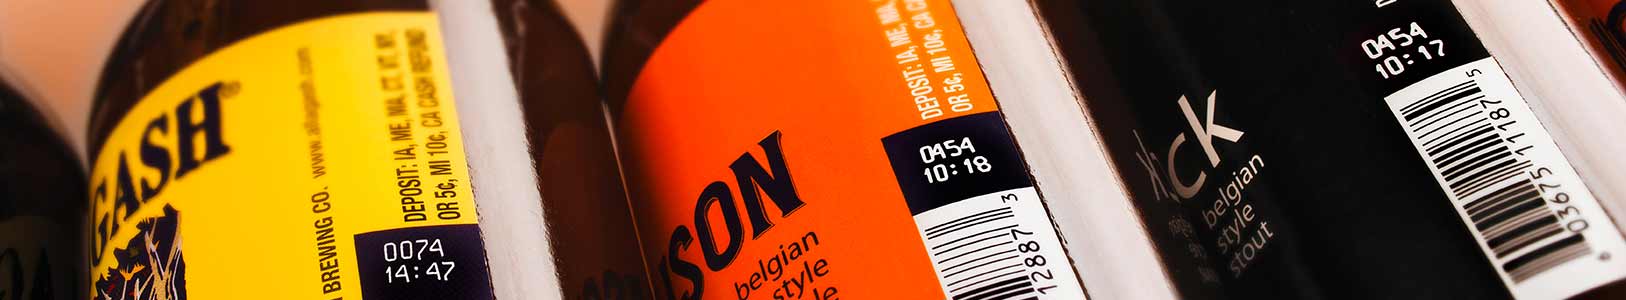 las-belgian-beer-bottles-bg-g2016-0931-1626x300-25-2